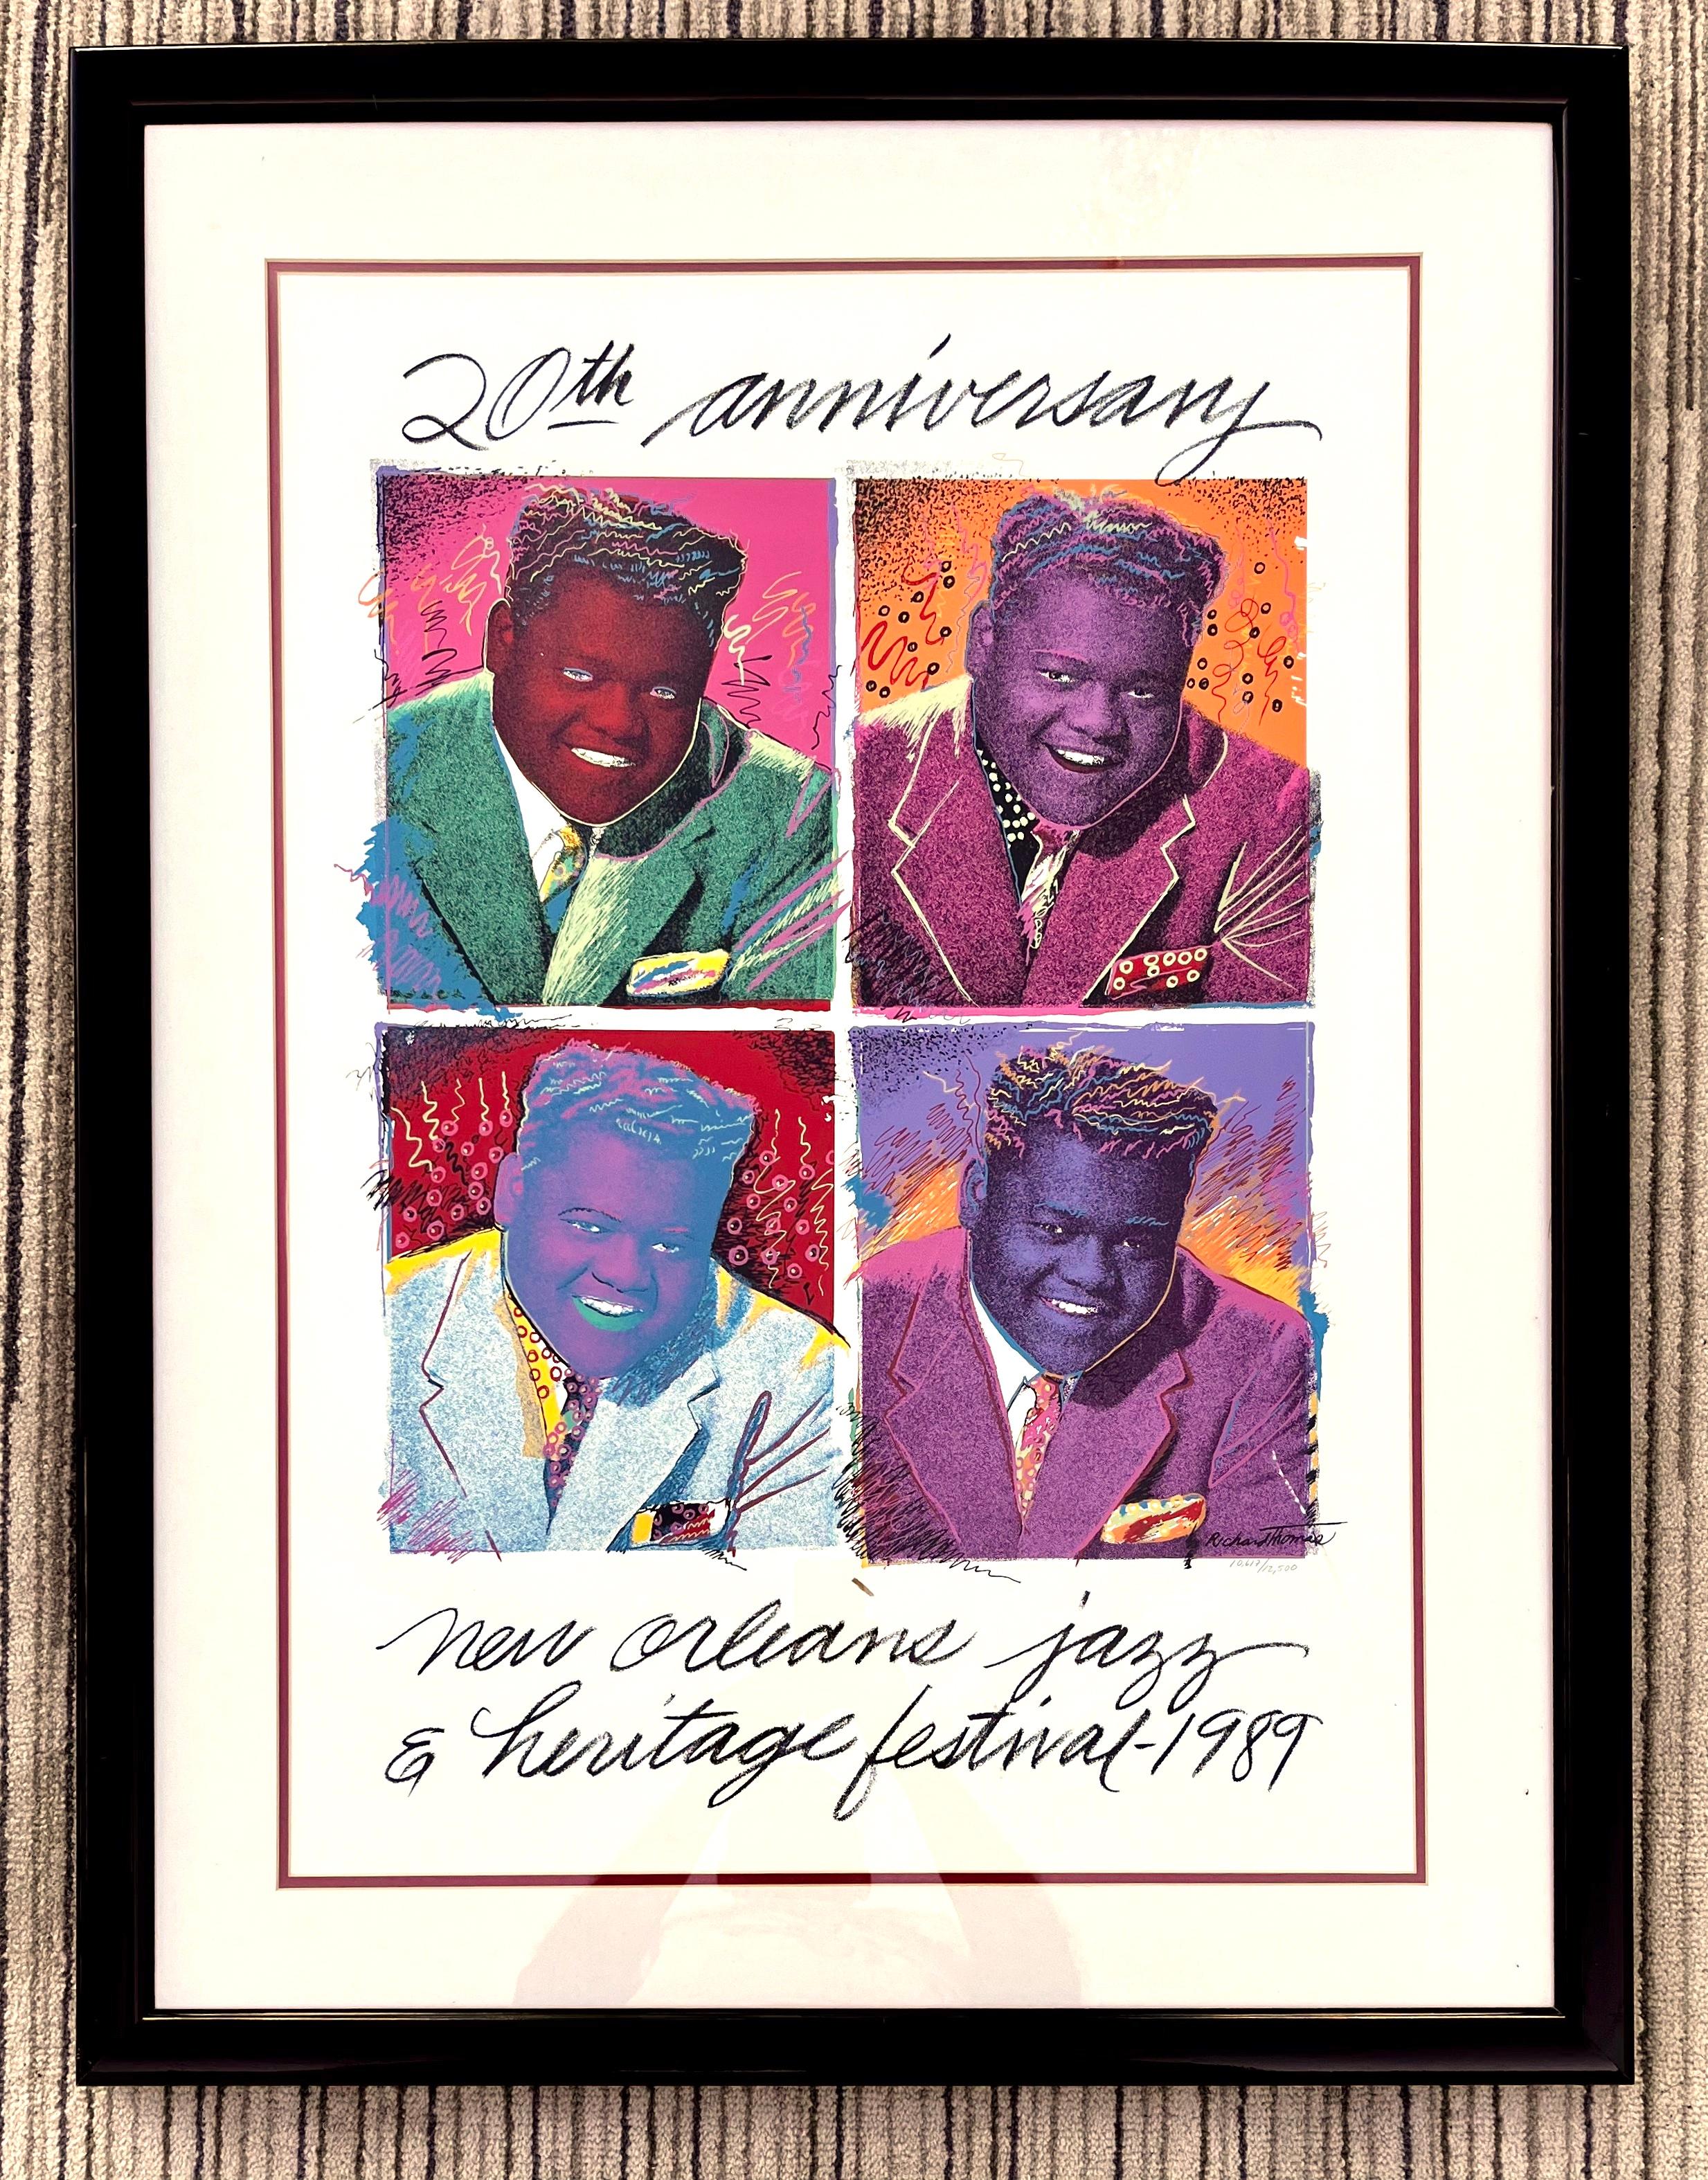 Vintage New Orleans 1989 Jazz Festival 20 Jahrestag Fats Domino Original Poster von Richard Thomas  Nummeriert und gerahmt. 
Fünfzehnter Band der Serie von Richard Thomas. Richard Thomas' Pop-Porträt von Fats Domino ist ein ebenso bedeutendes Plakat